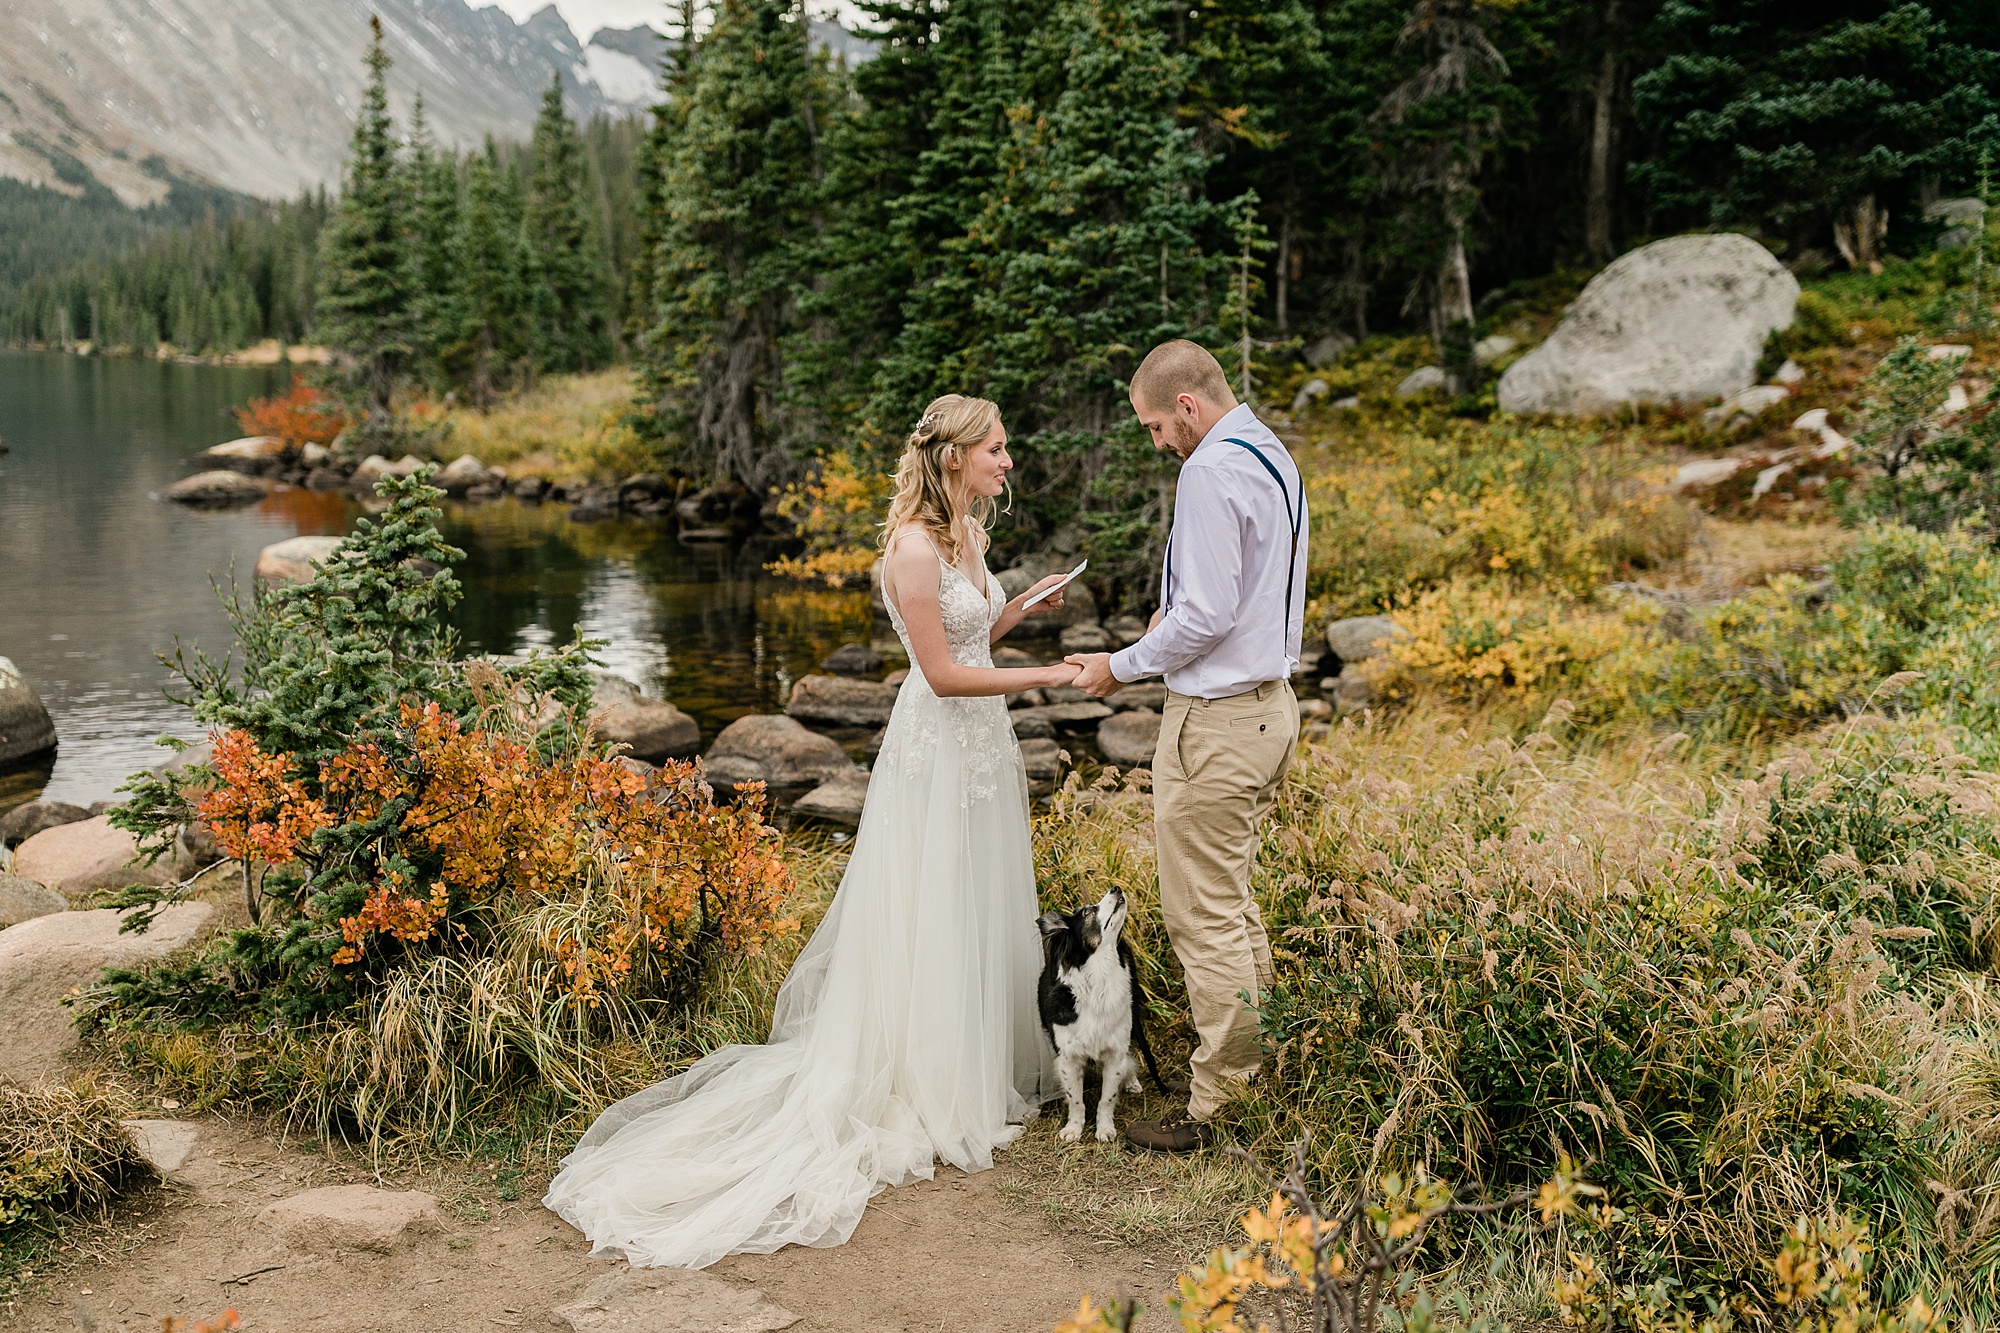 Fall Colorado elopement at Long Lake and Brainard Lake